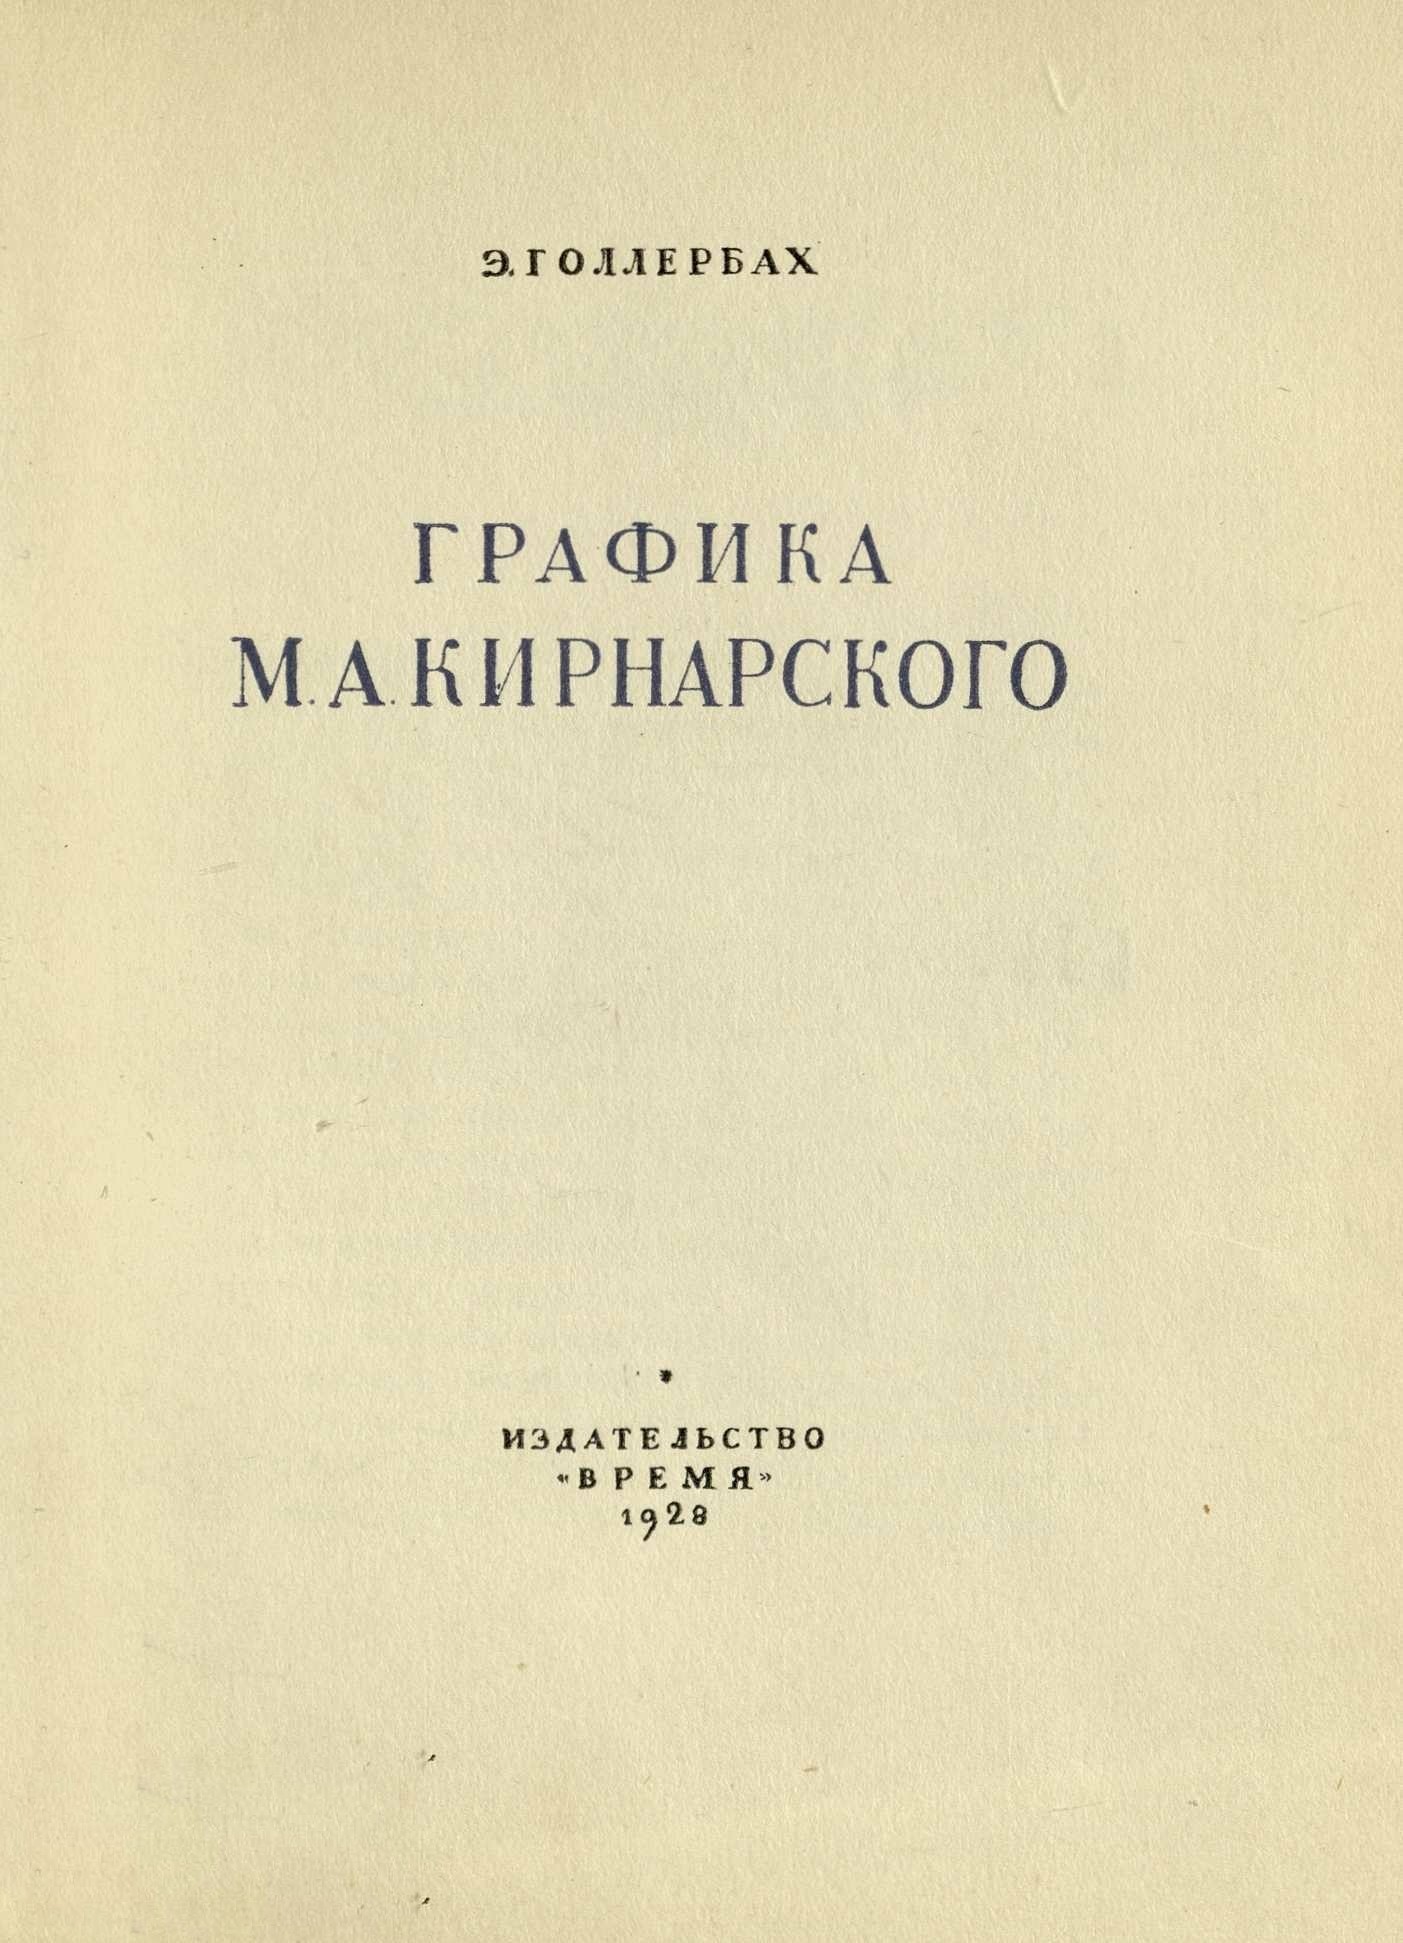 Графика М. А. Кирнарского / Э. Голлербах. — [Ленинград] : Издательство «Время», 1928